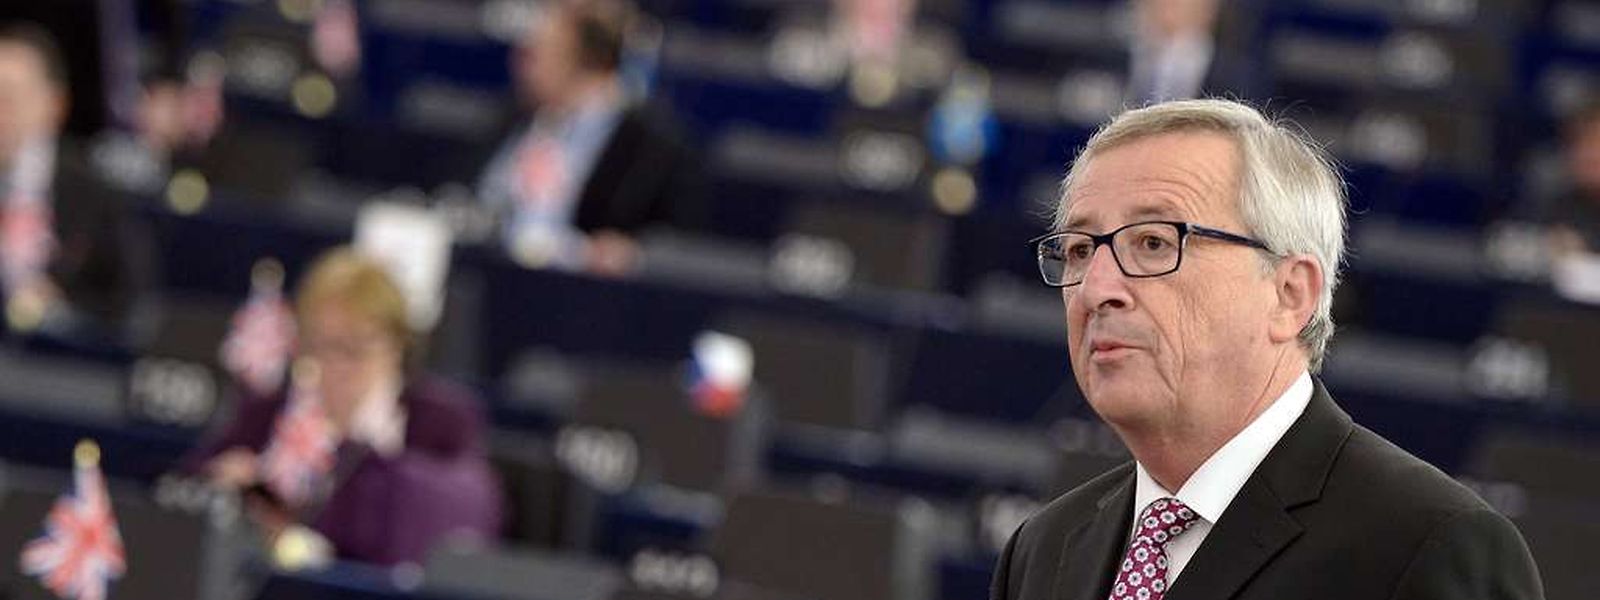 Jean-Claude Juncker könnten die Überprüfungen in Bedrängnis bringen.